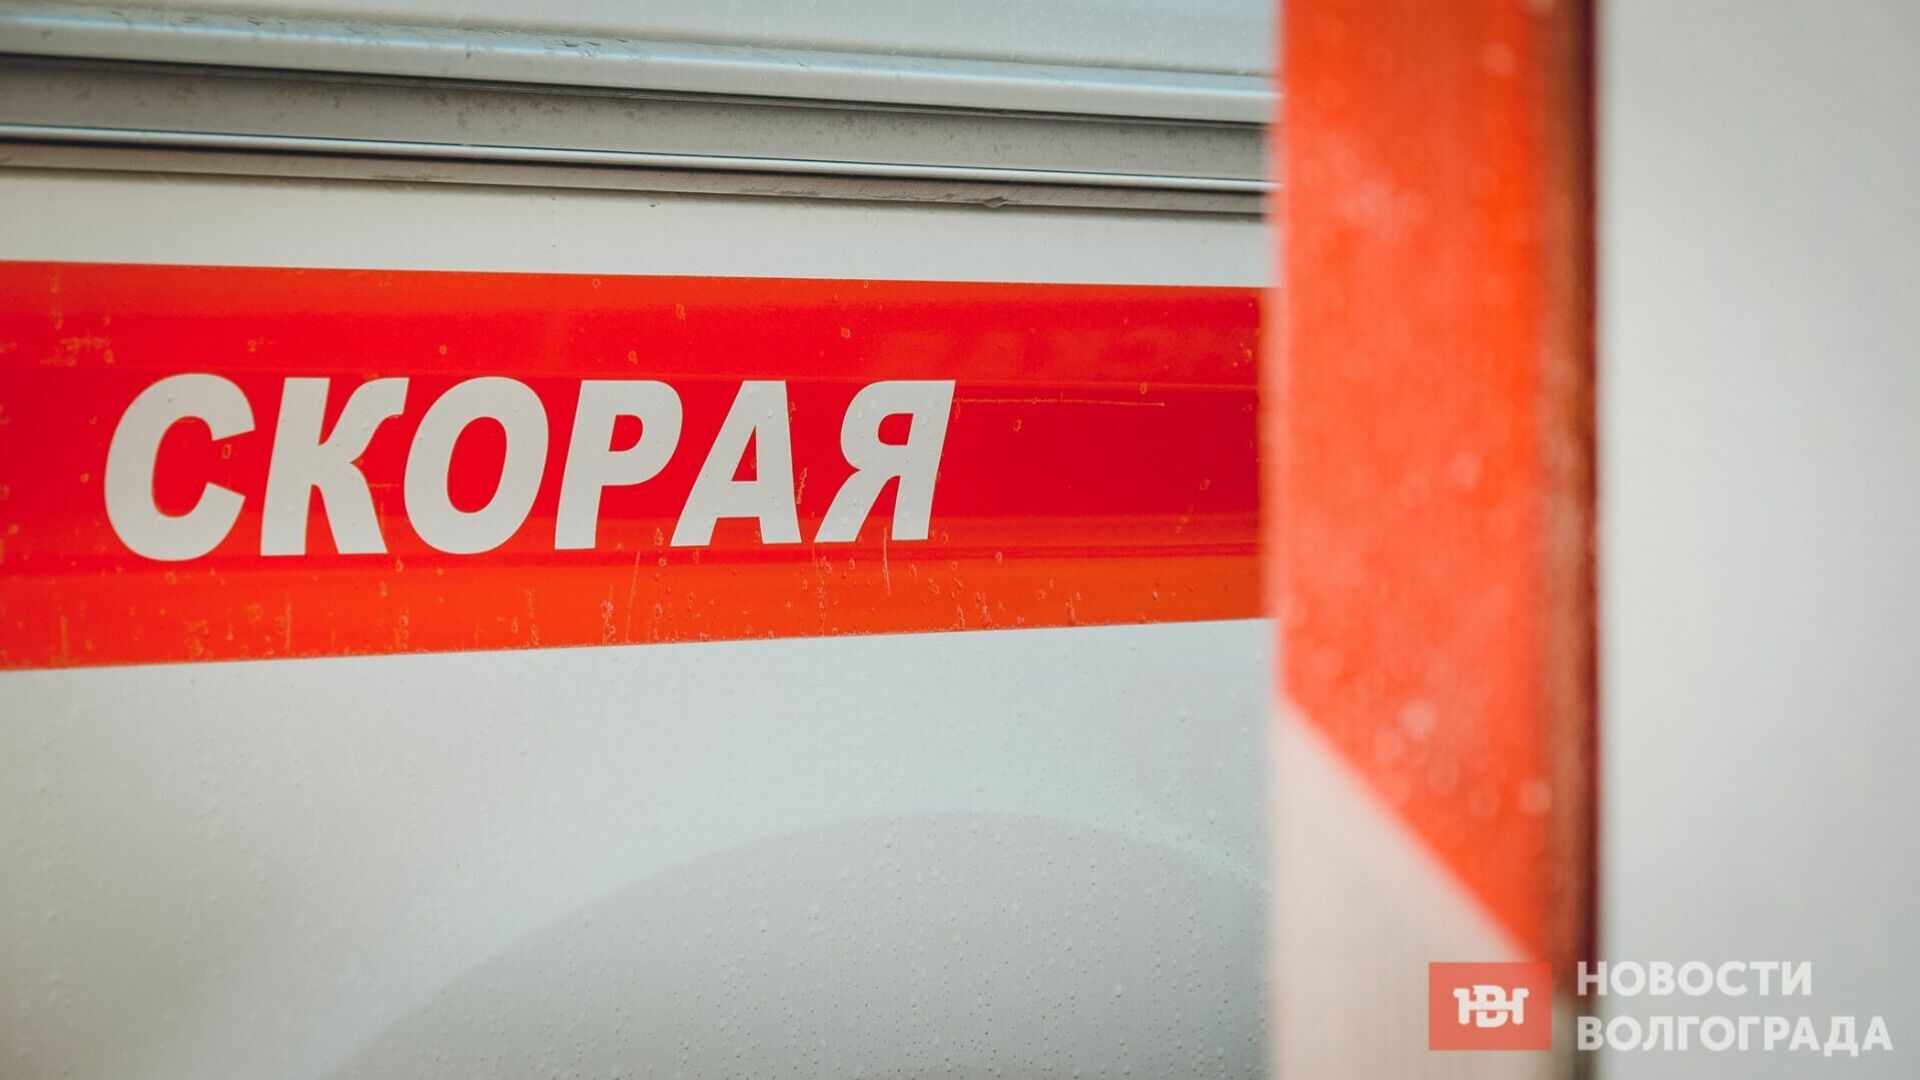 Строитель сорвался с высоты 12 метров в Волгограде